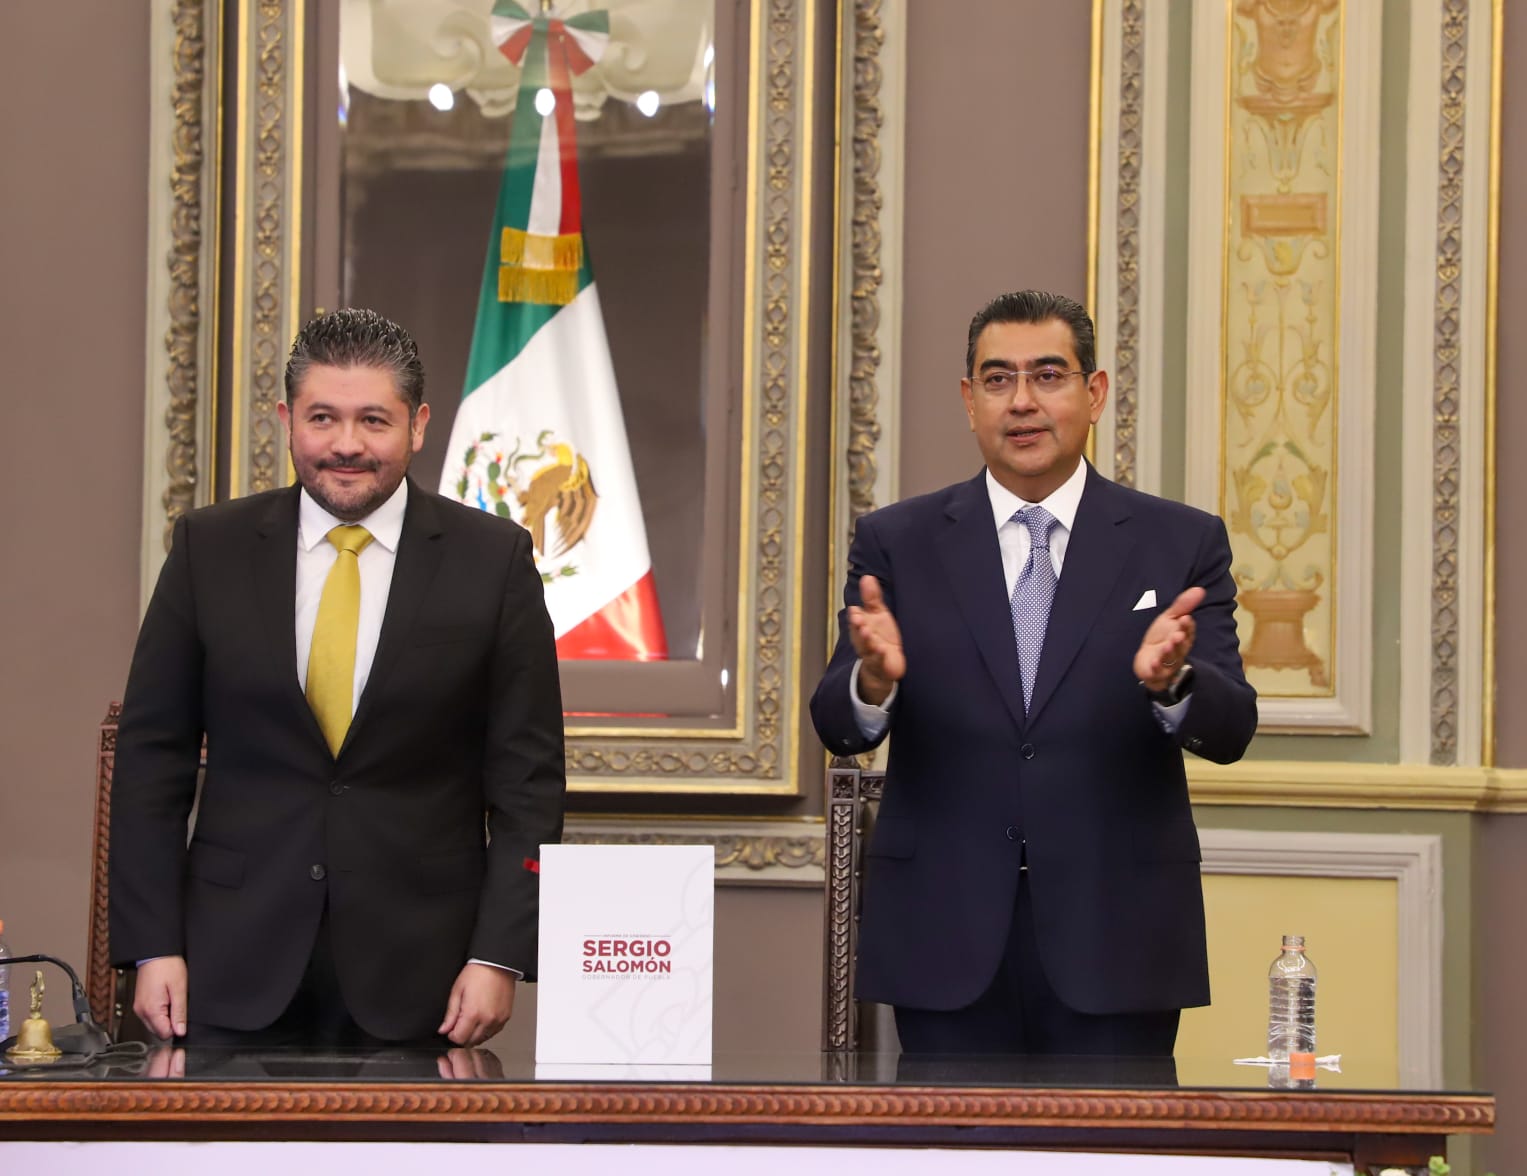 Con unidad, conciliación y gasto responsable, gobierno estatal construye un mejor Puebla: Sergio Salomón